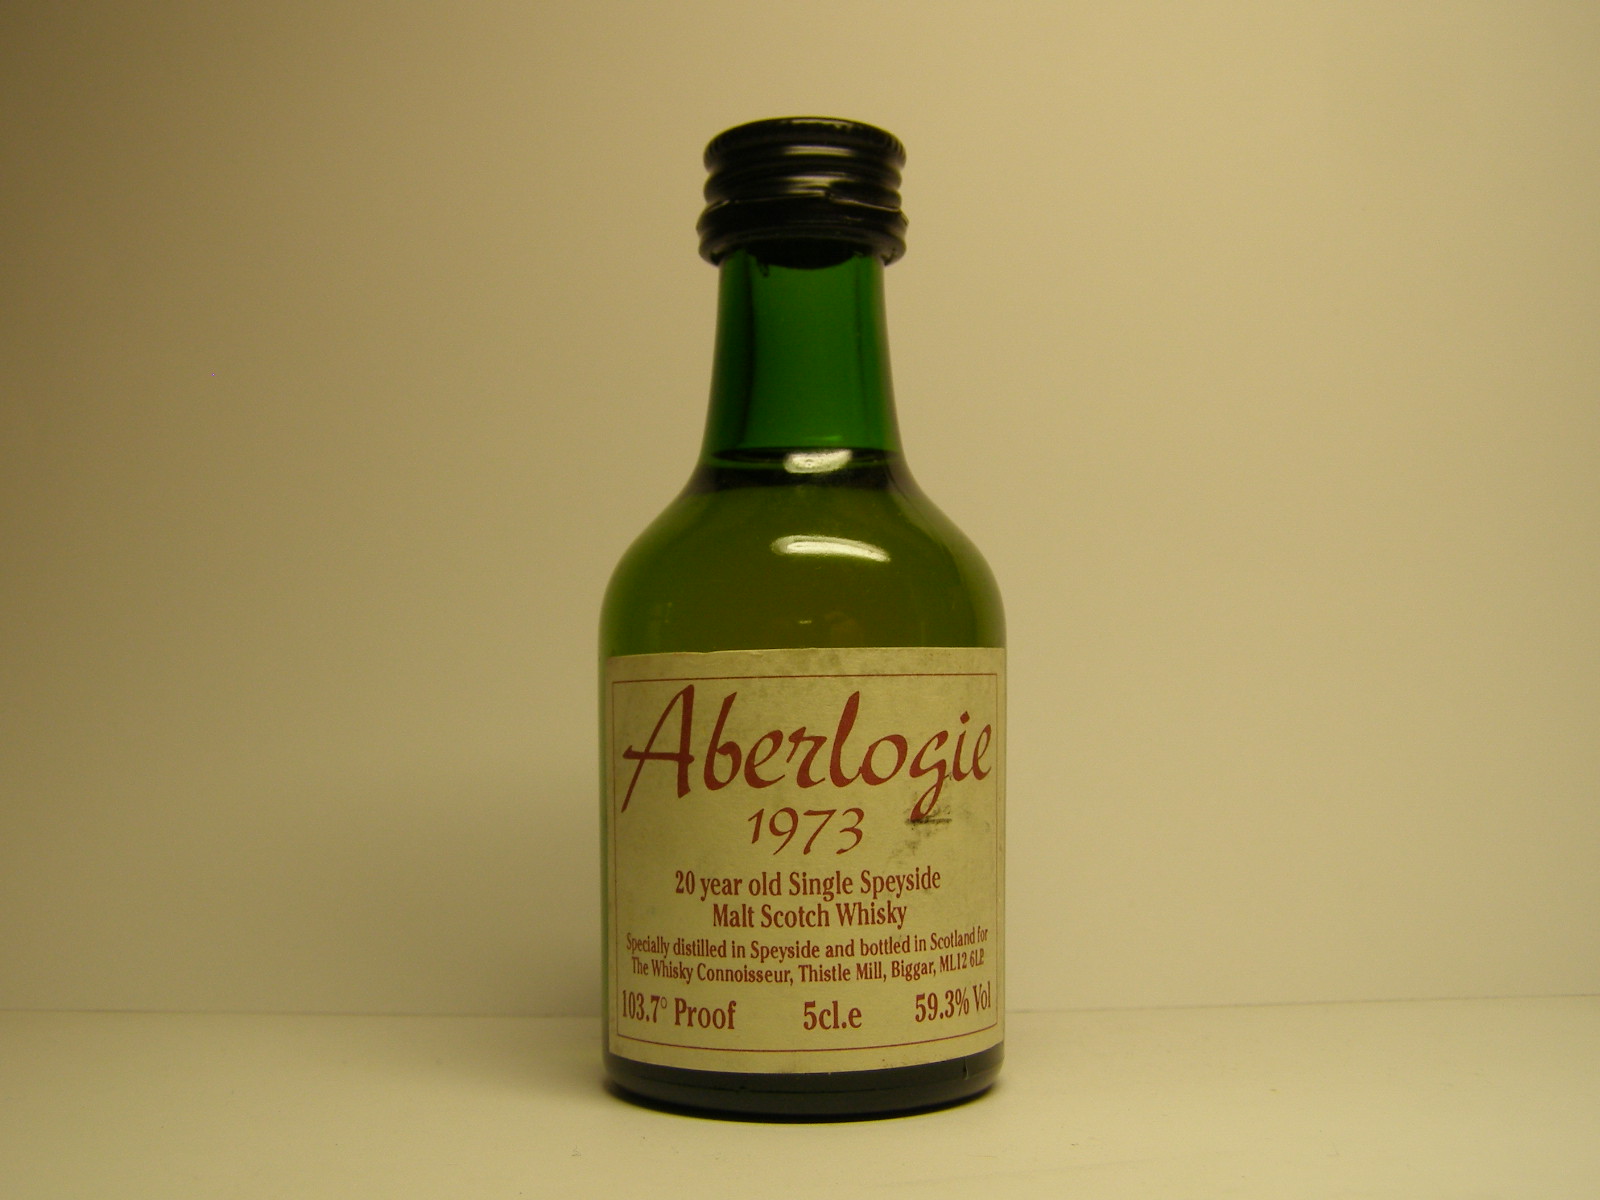 ABERLOGIE SSMSW 20yo 1973 "Whisky Connoisseur" 5cl.e 59,3%Vol 103.7´Proof